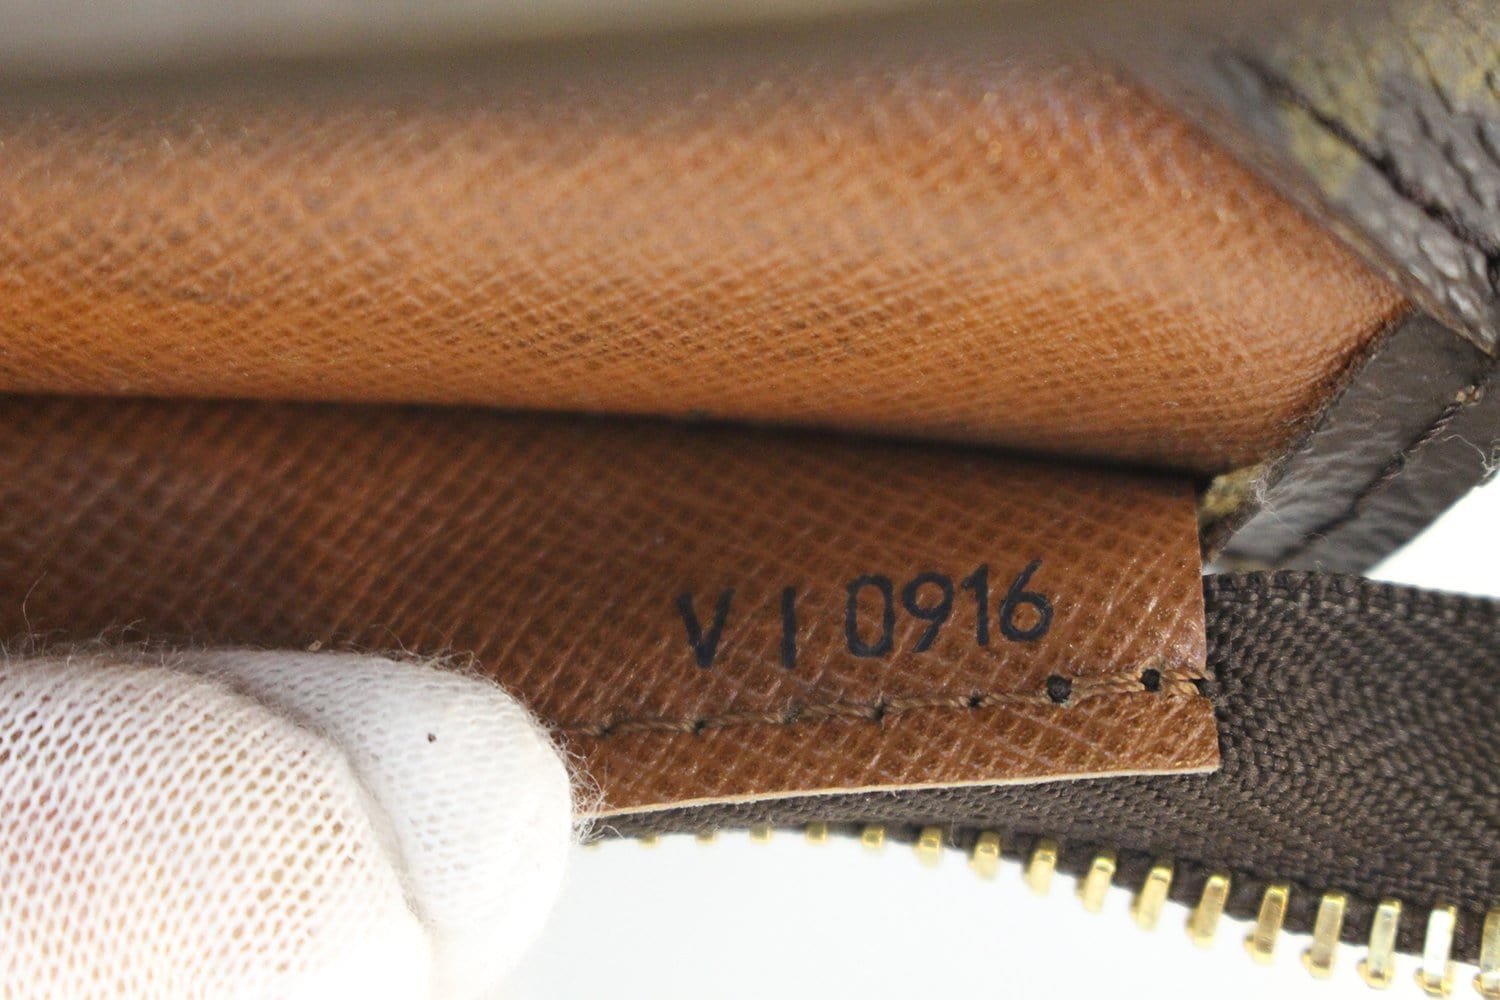 Louis Vuitton Babylone M51102 Brown Monogram Tote Bag 11551